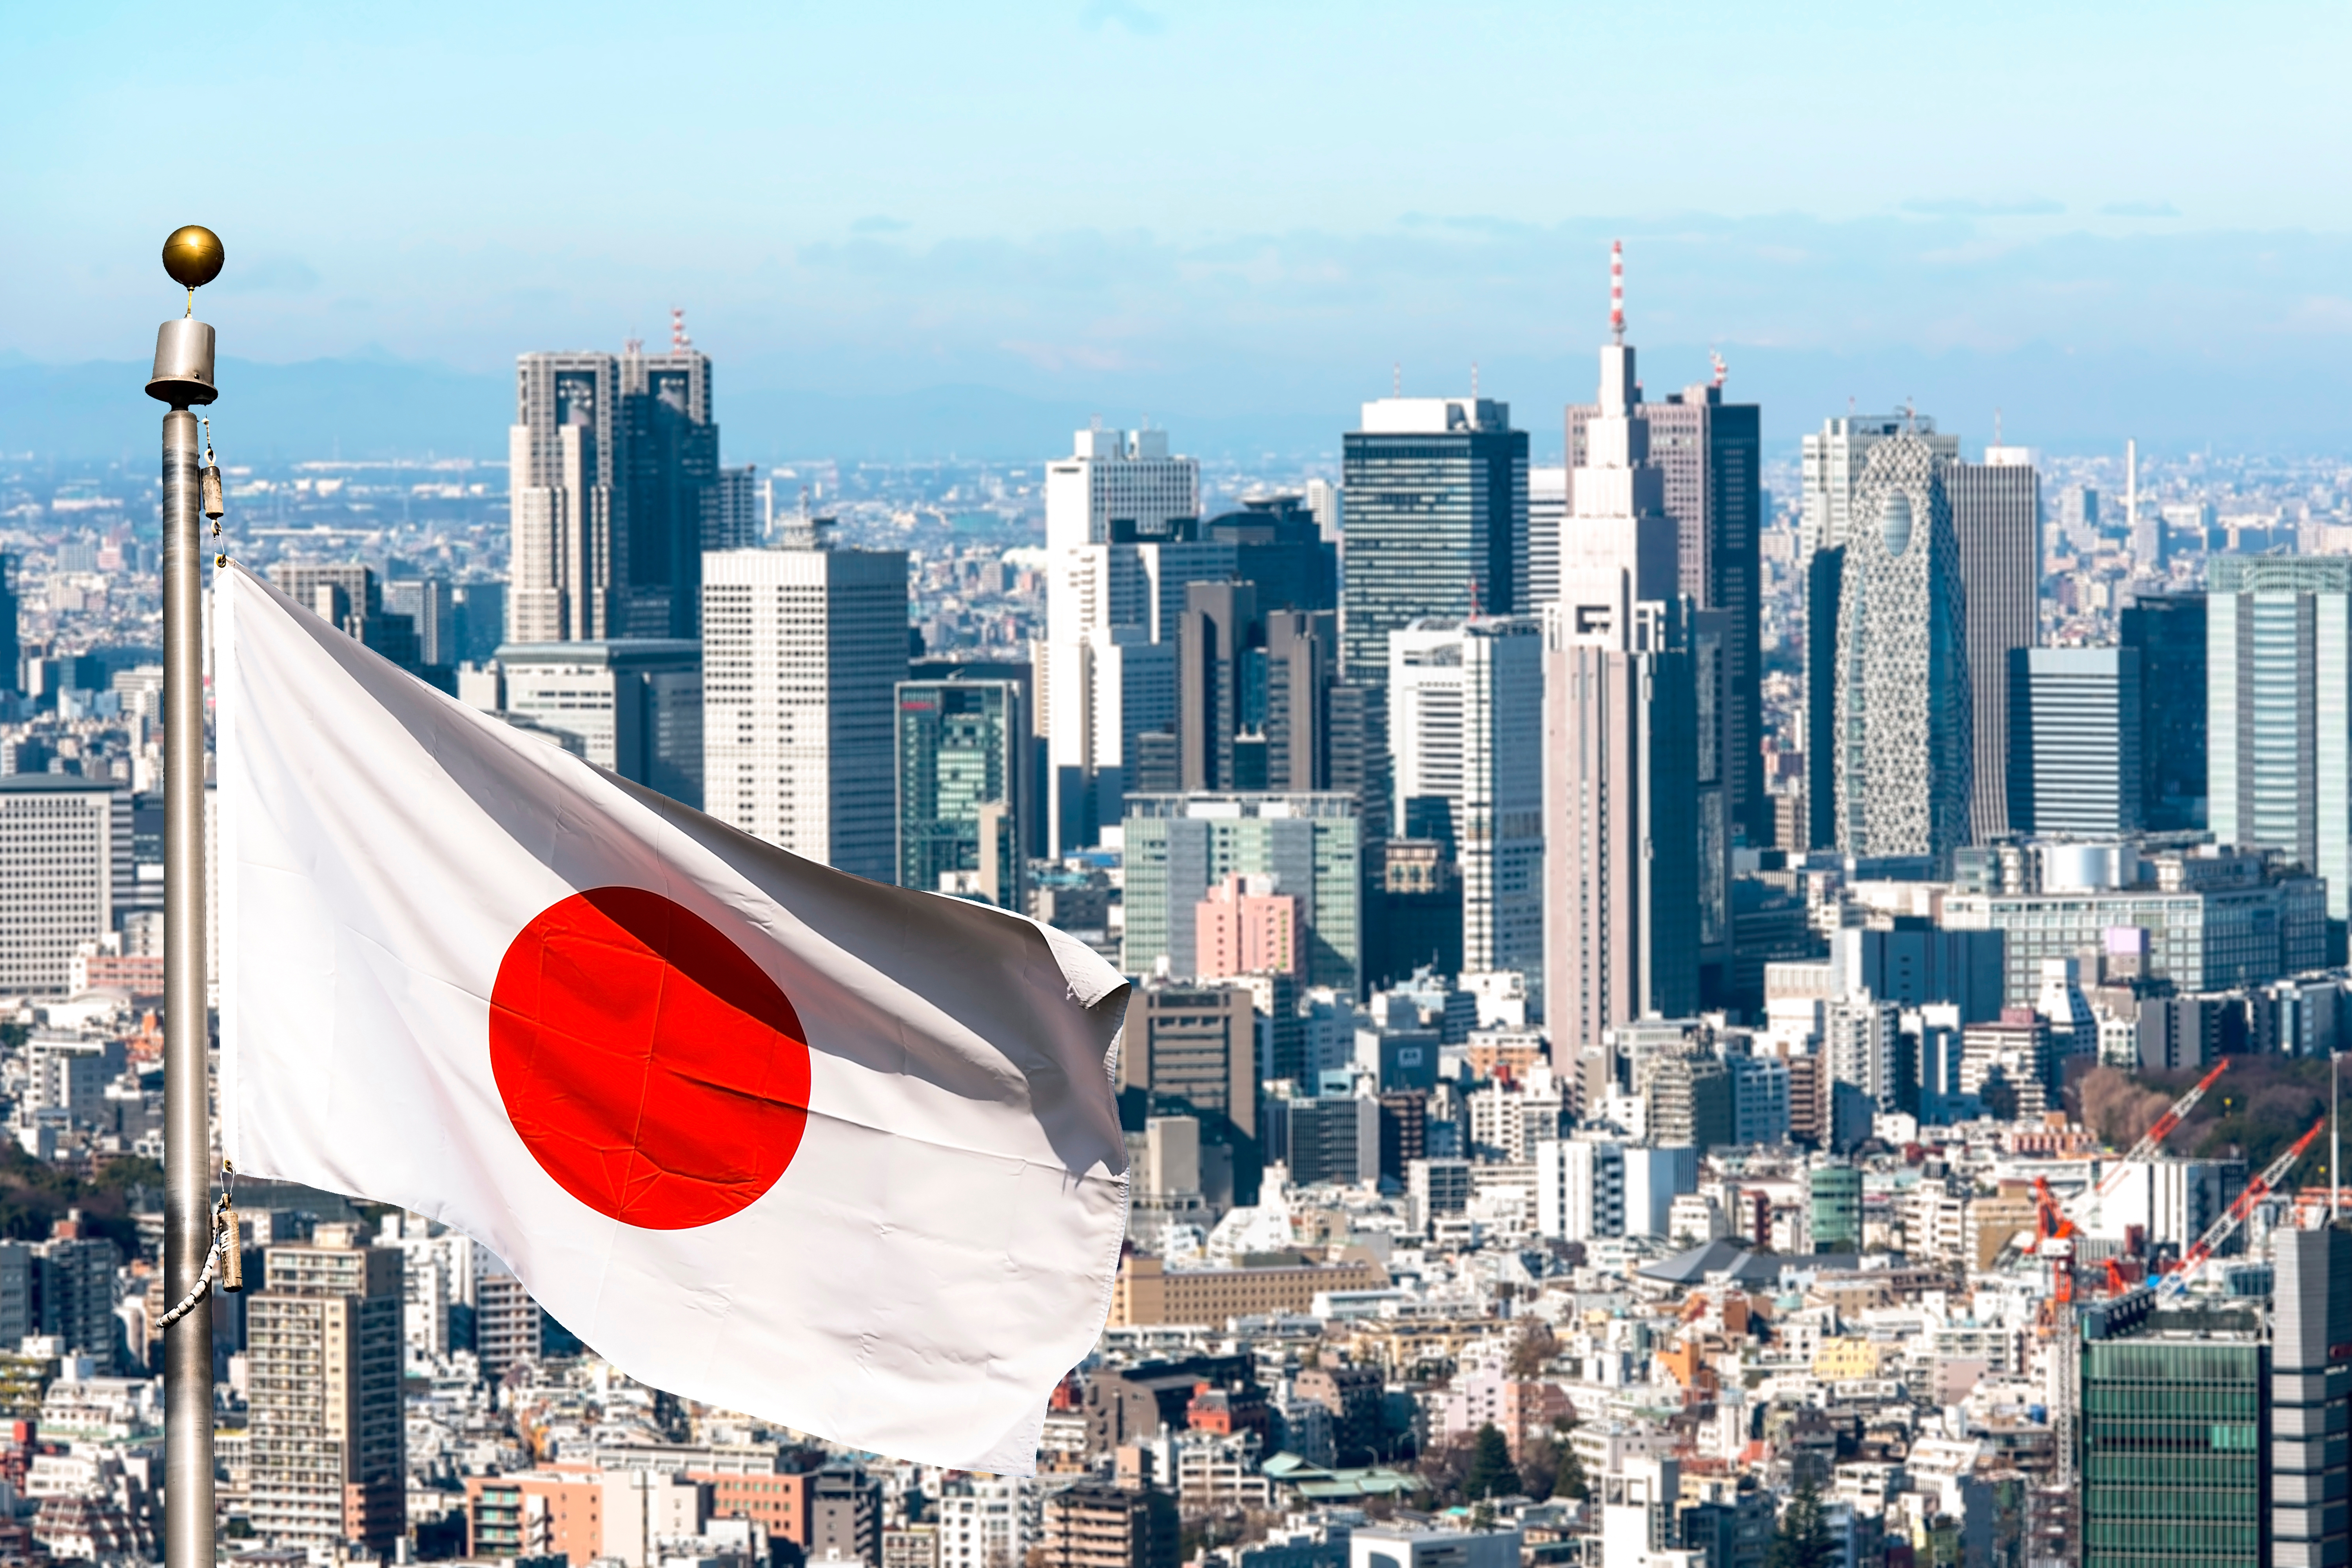 The flag symbolizes Japanese citizenship